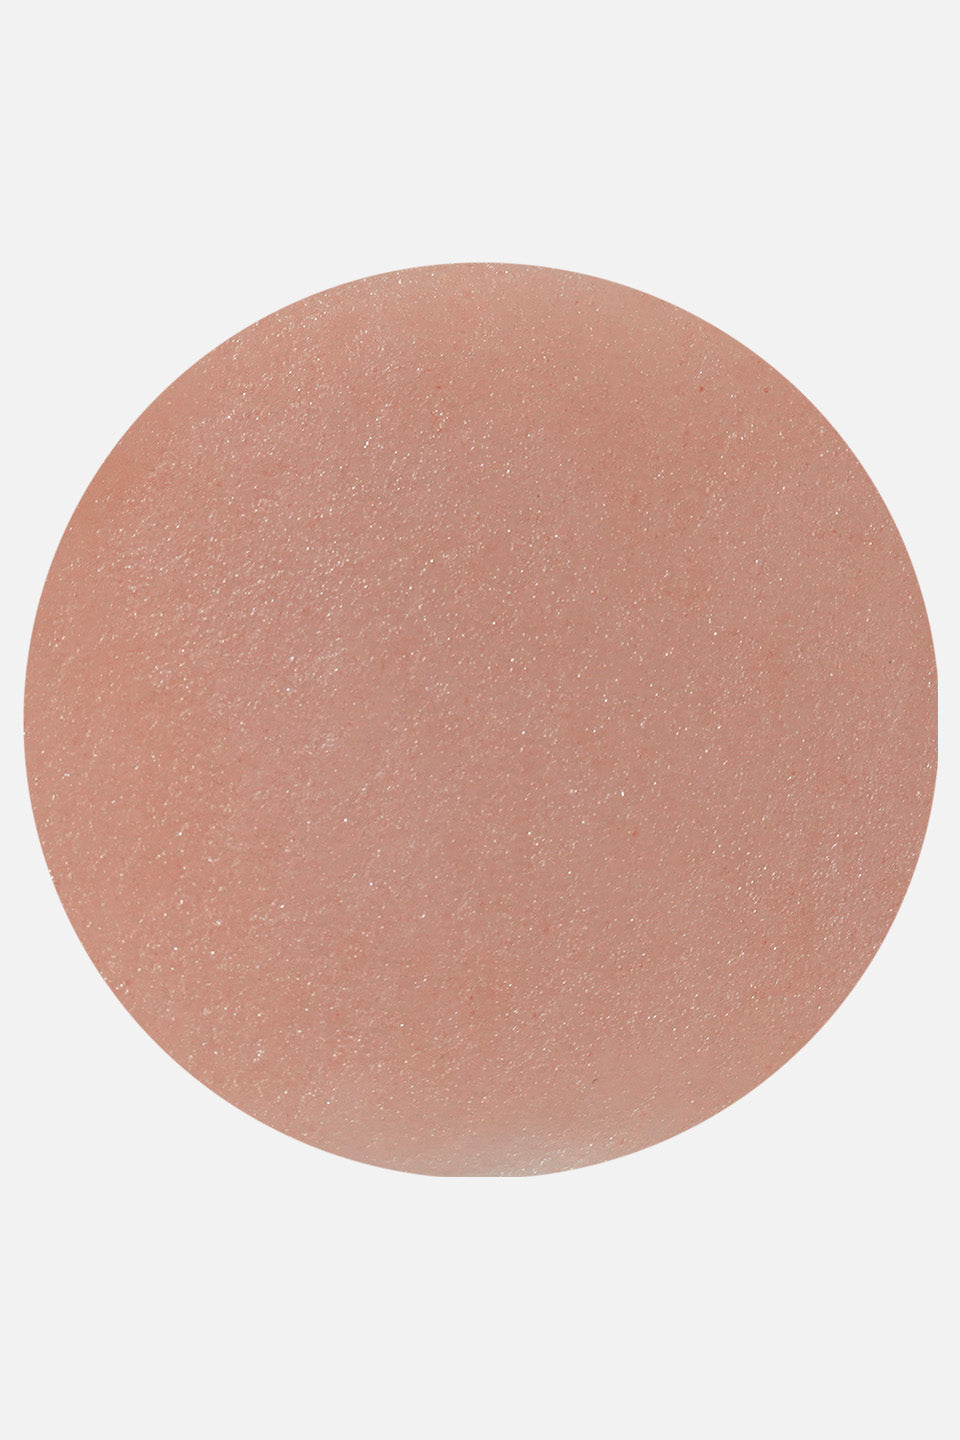 Polypink Cover polvo acrílico rosa claro 45 g